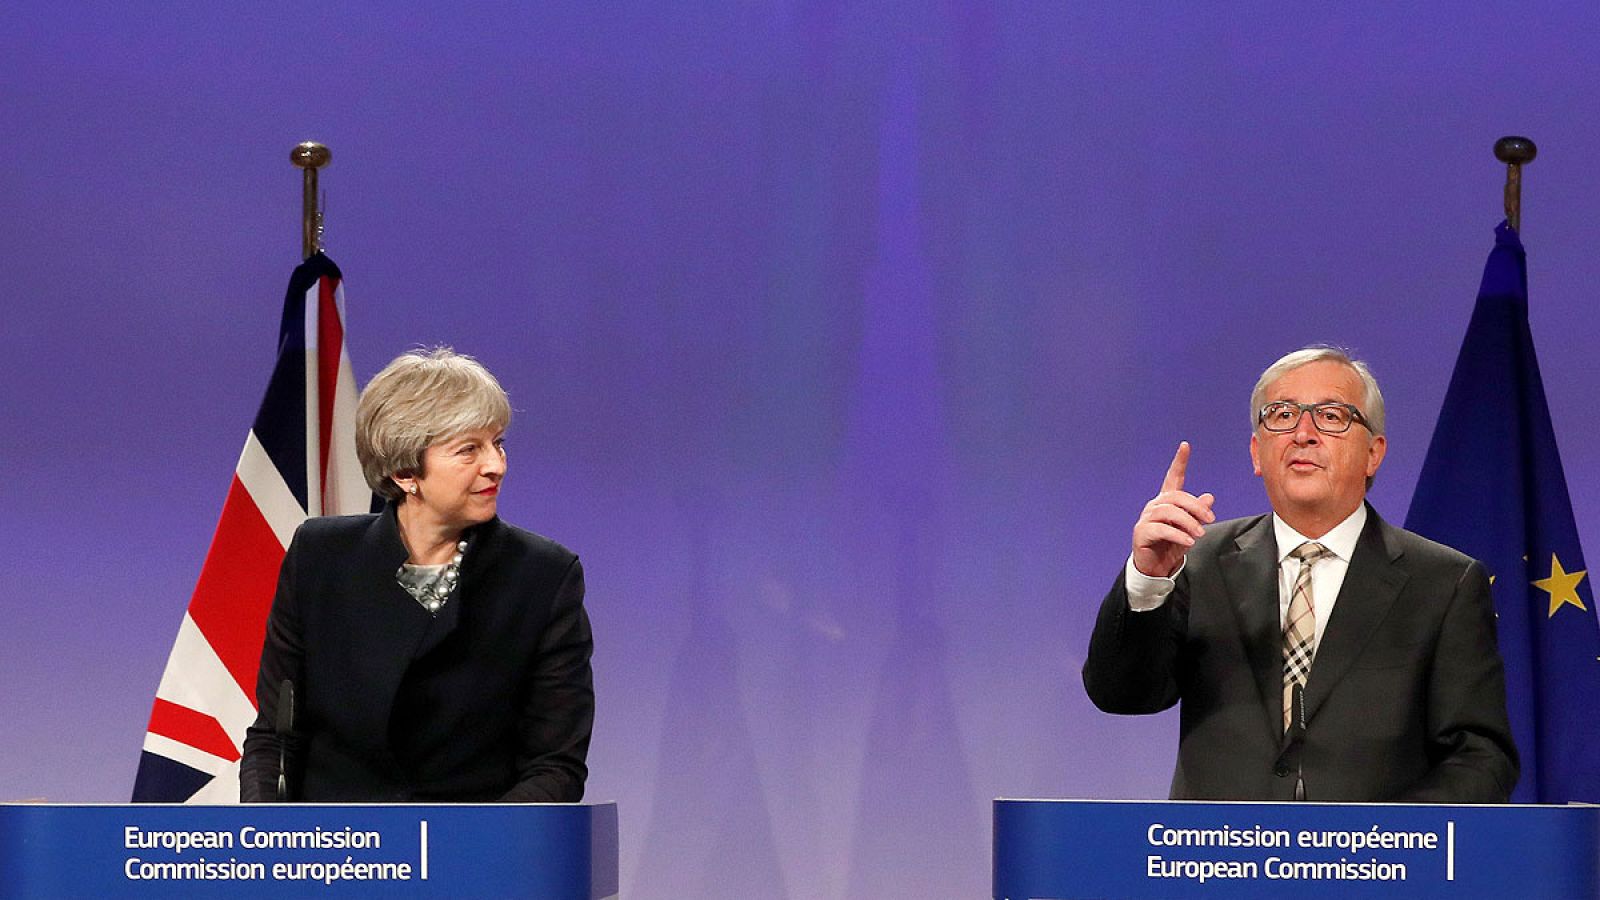 La primera ministra británica, Theresa May y el presidente de la Comisión Europea, Jean-Claude Juncker comparecen tras la reunión para negociar diferentes términos del "brexit".